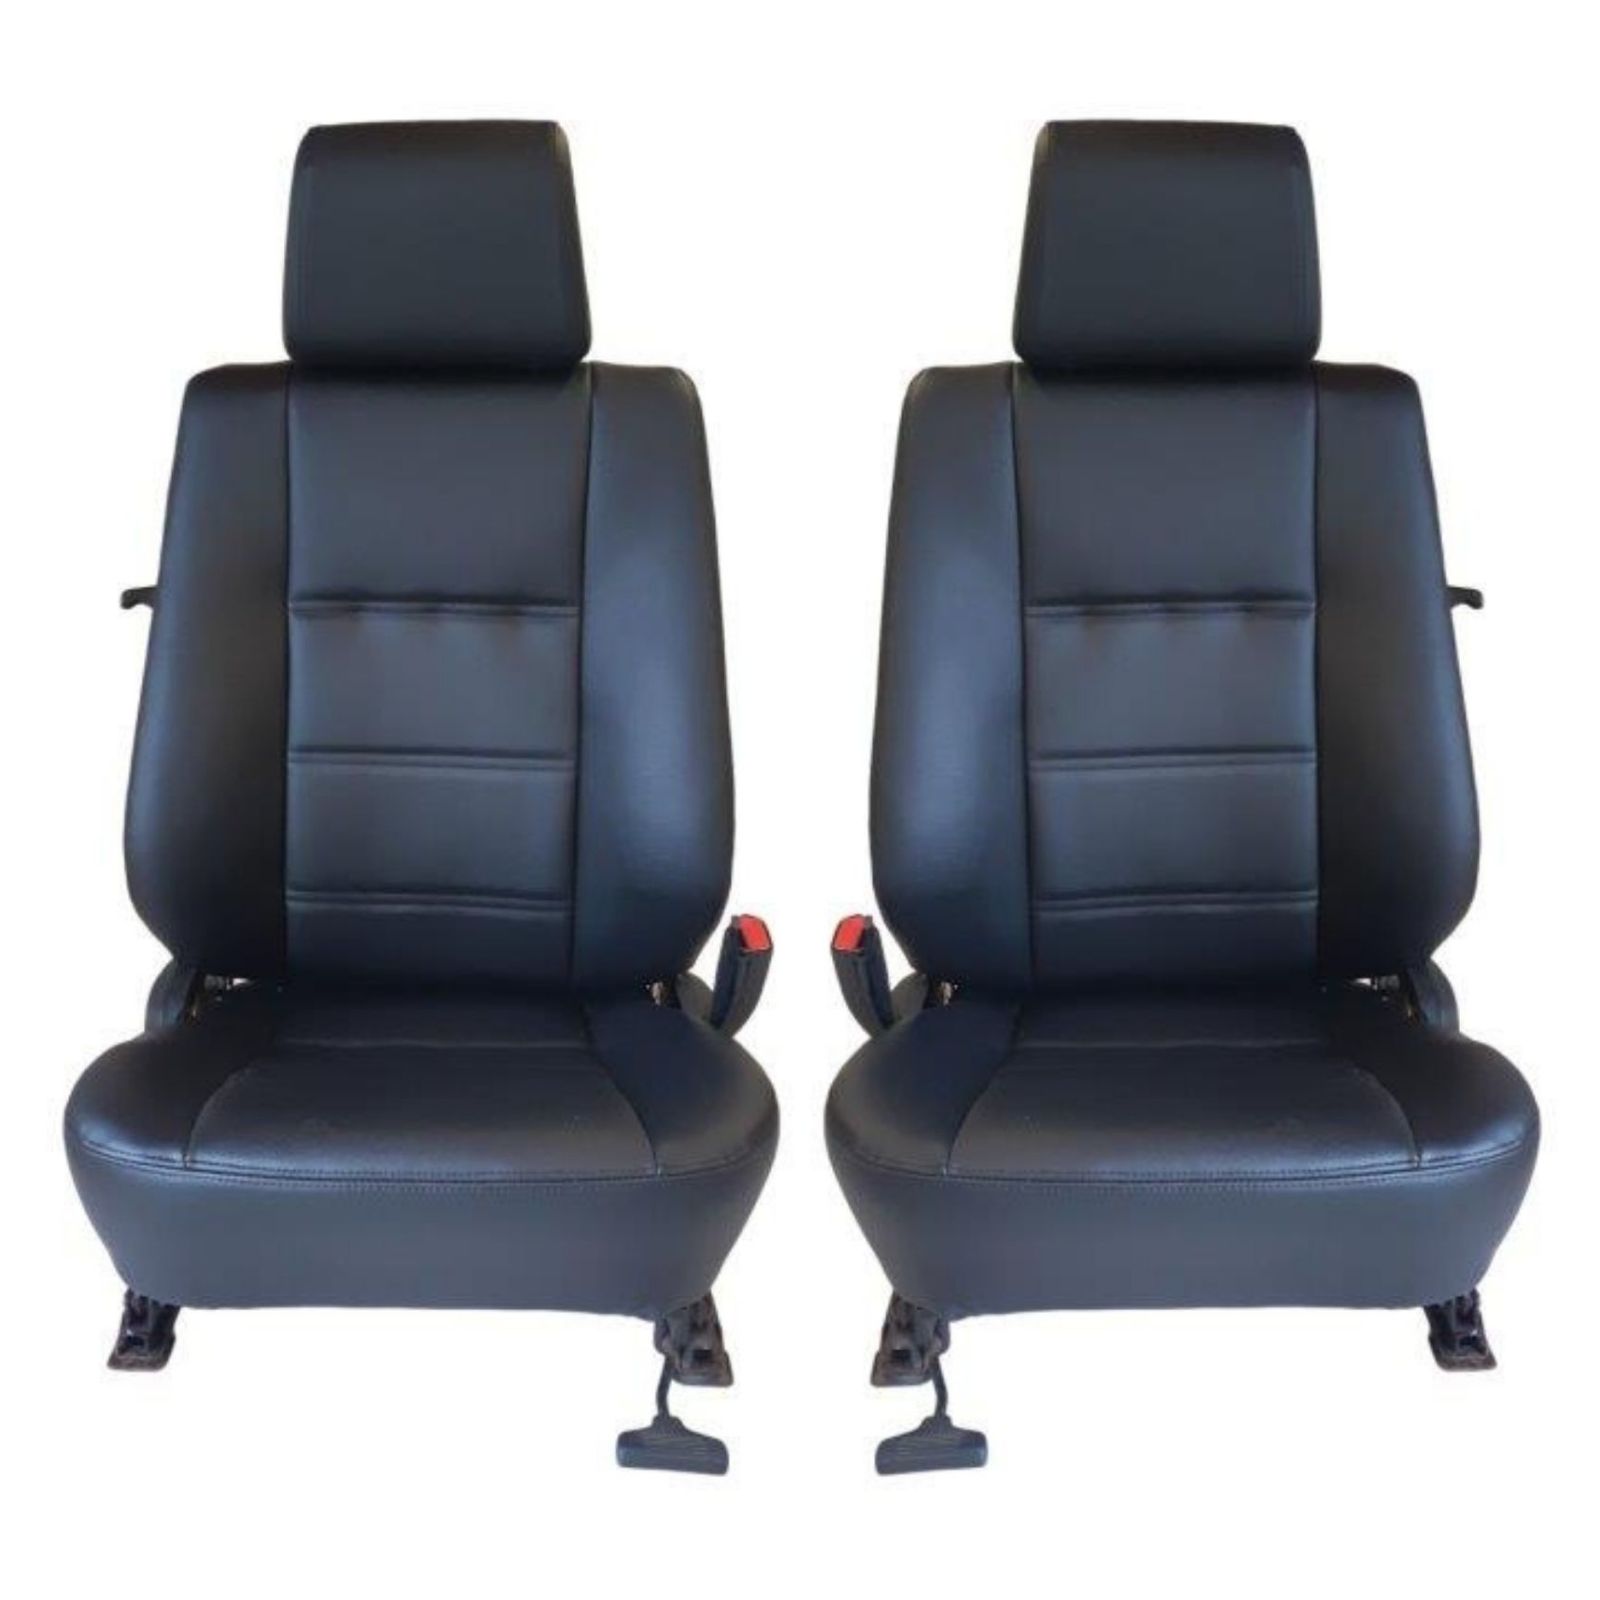 Coiffes sièges avant en simili cuir noir pour siège BMW E 30 coupé er 5 portes